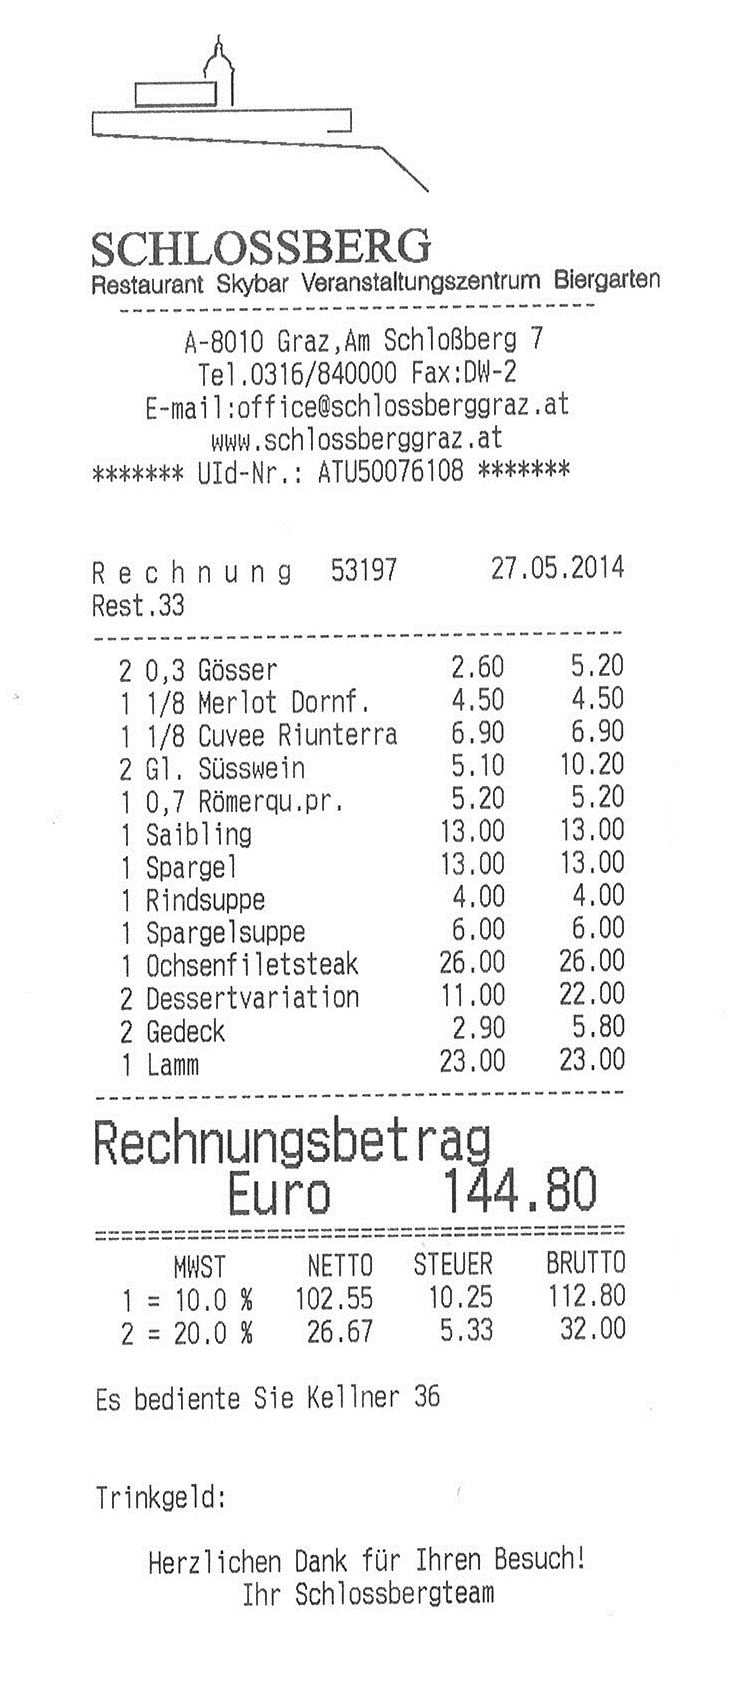 Schloßbergrestaurant - Rechnung - Schlossbergrestaurant - Graz